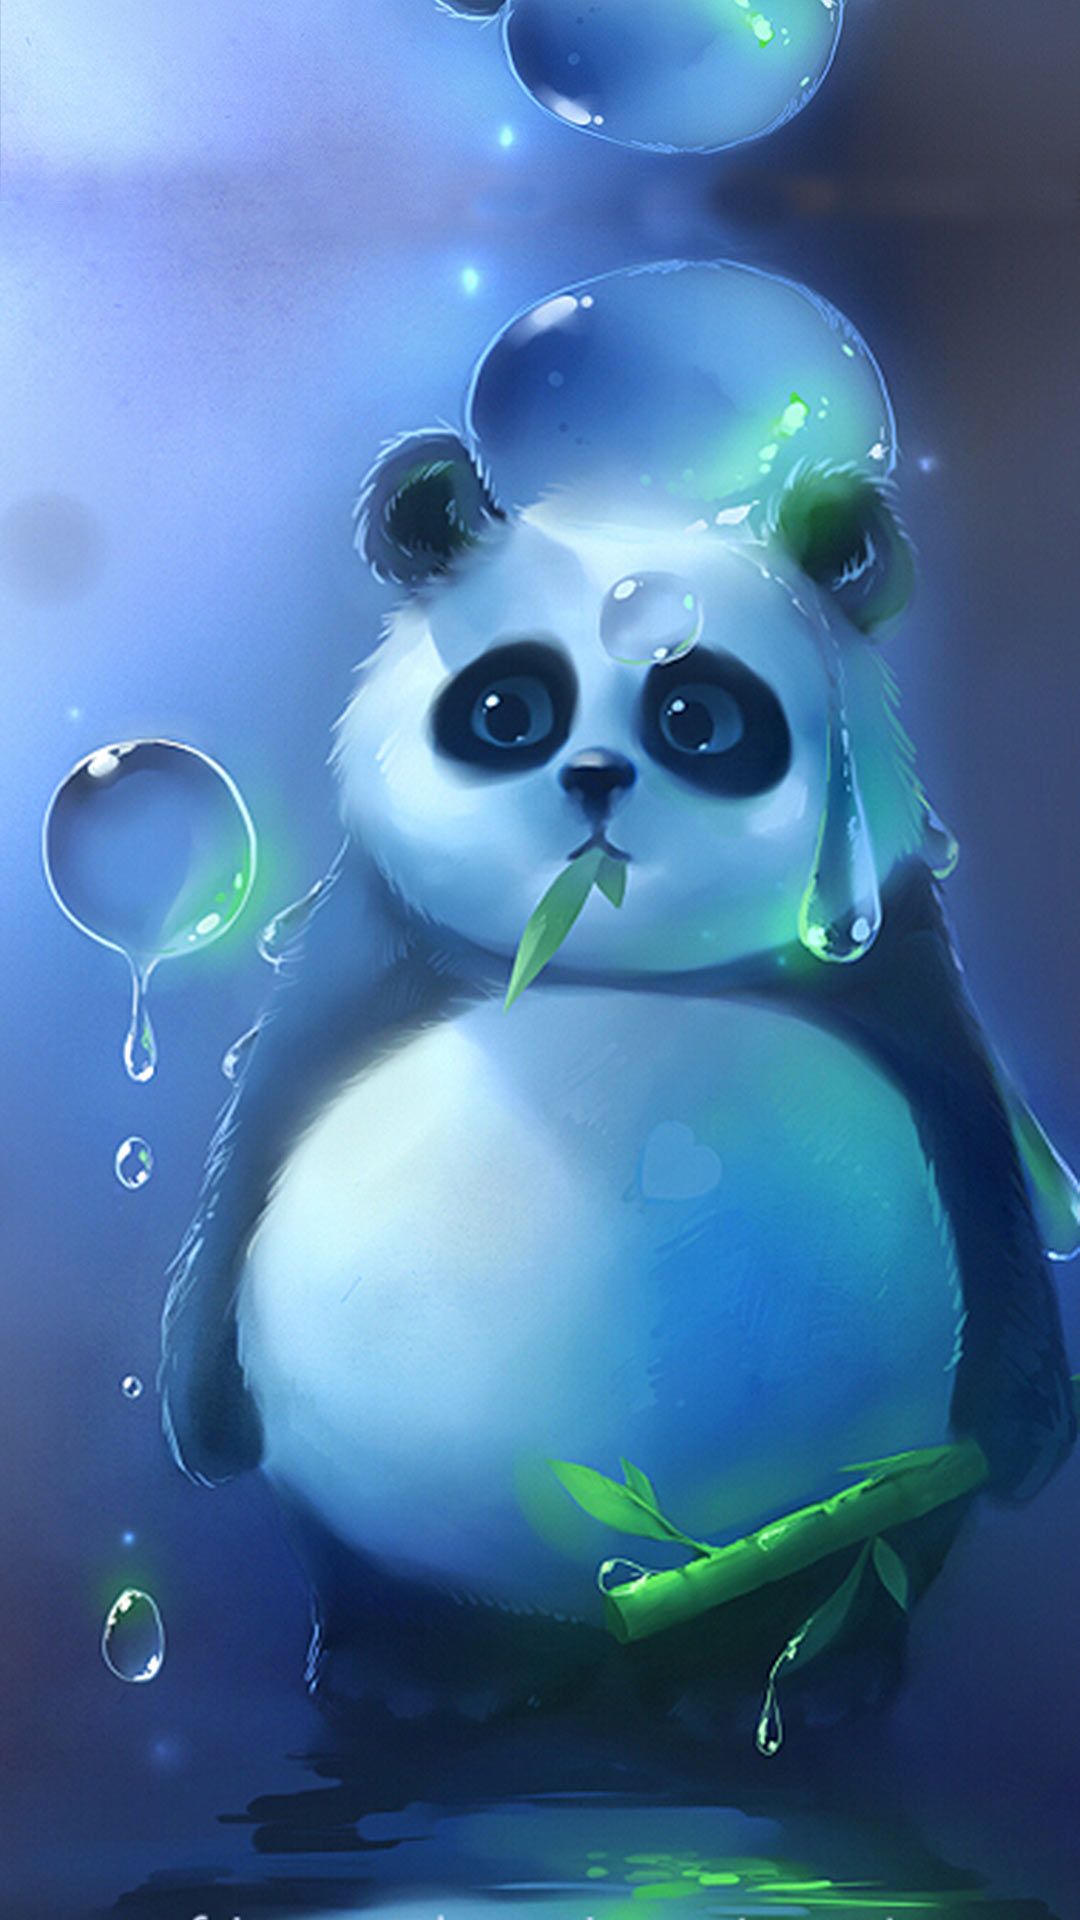 嘴里吃着竹叶,手里拿着竹子的可爱熊猫手机图片壁纸